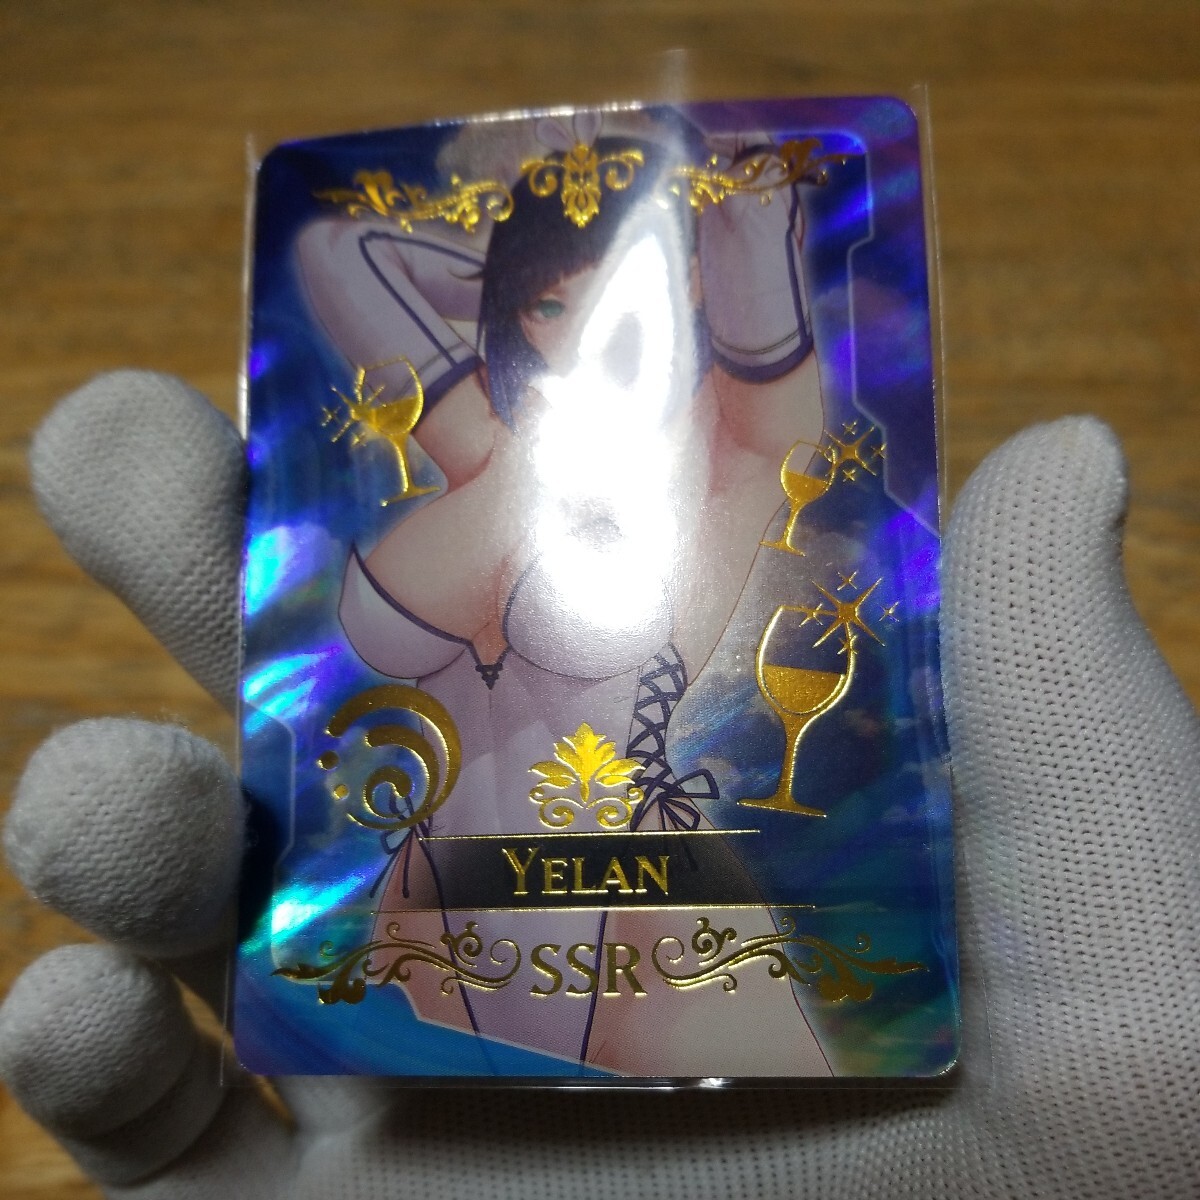 【新品未使用】ACGカード 海外製 セクシーカード 原神 イェラン 夜蘭 ファンカード 美少女035_画像4